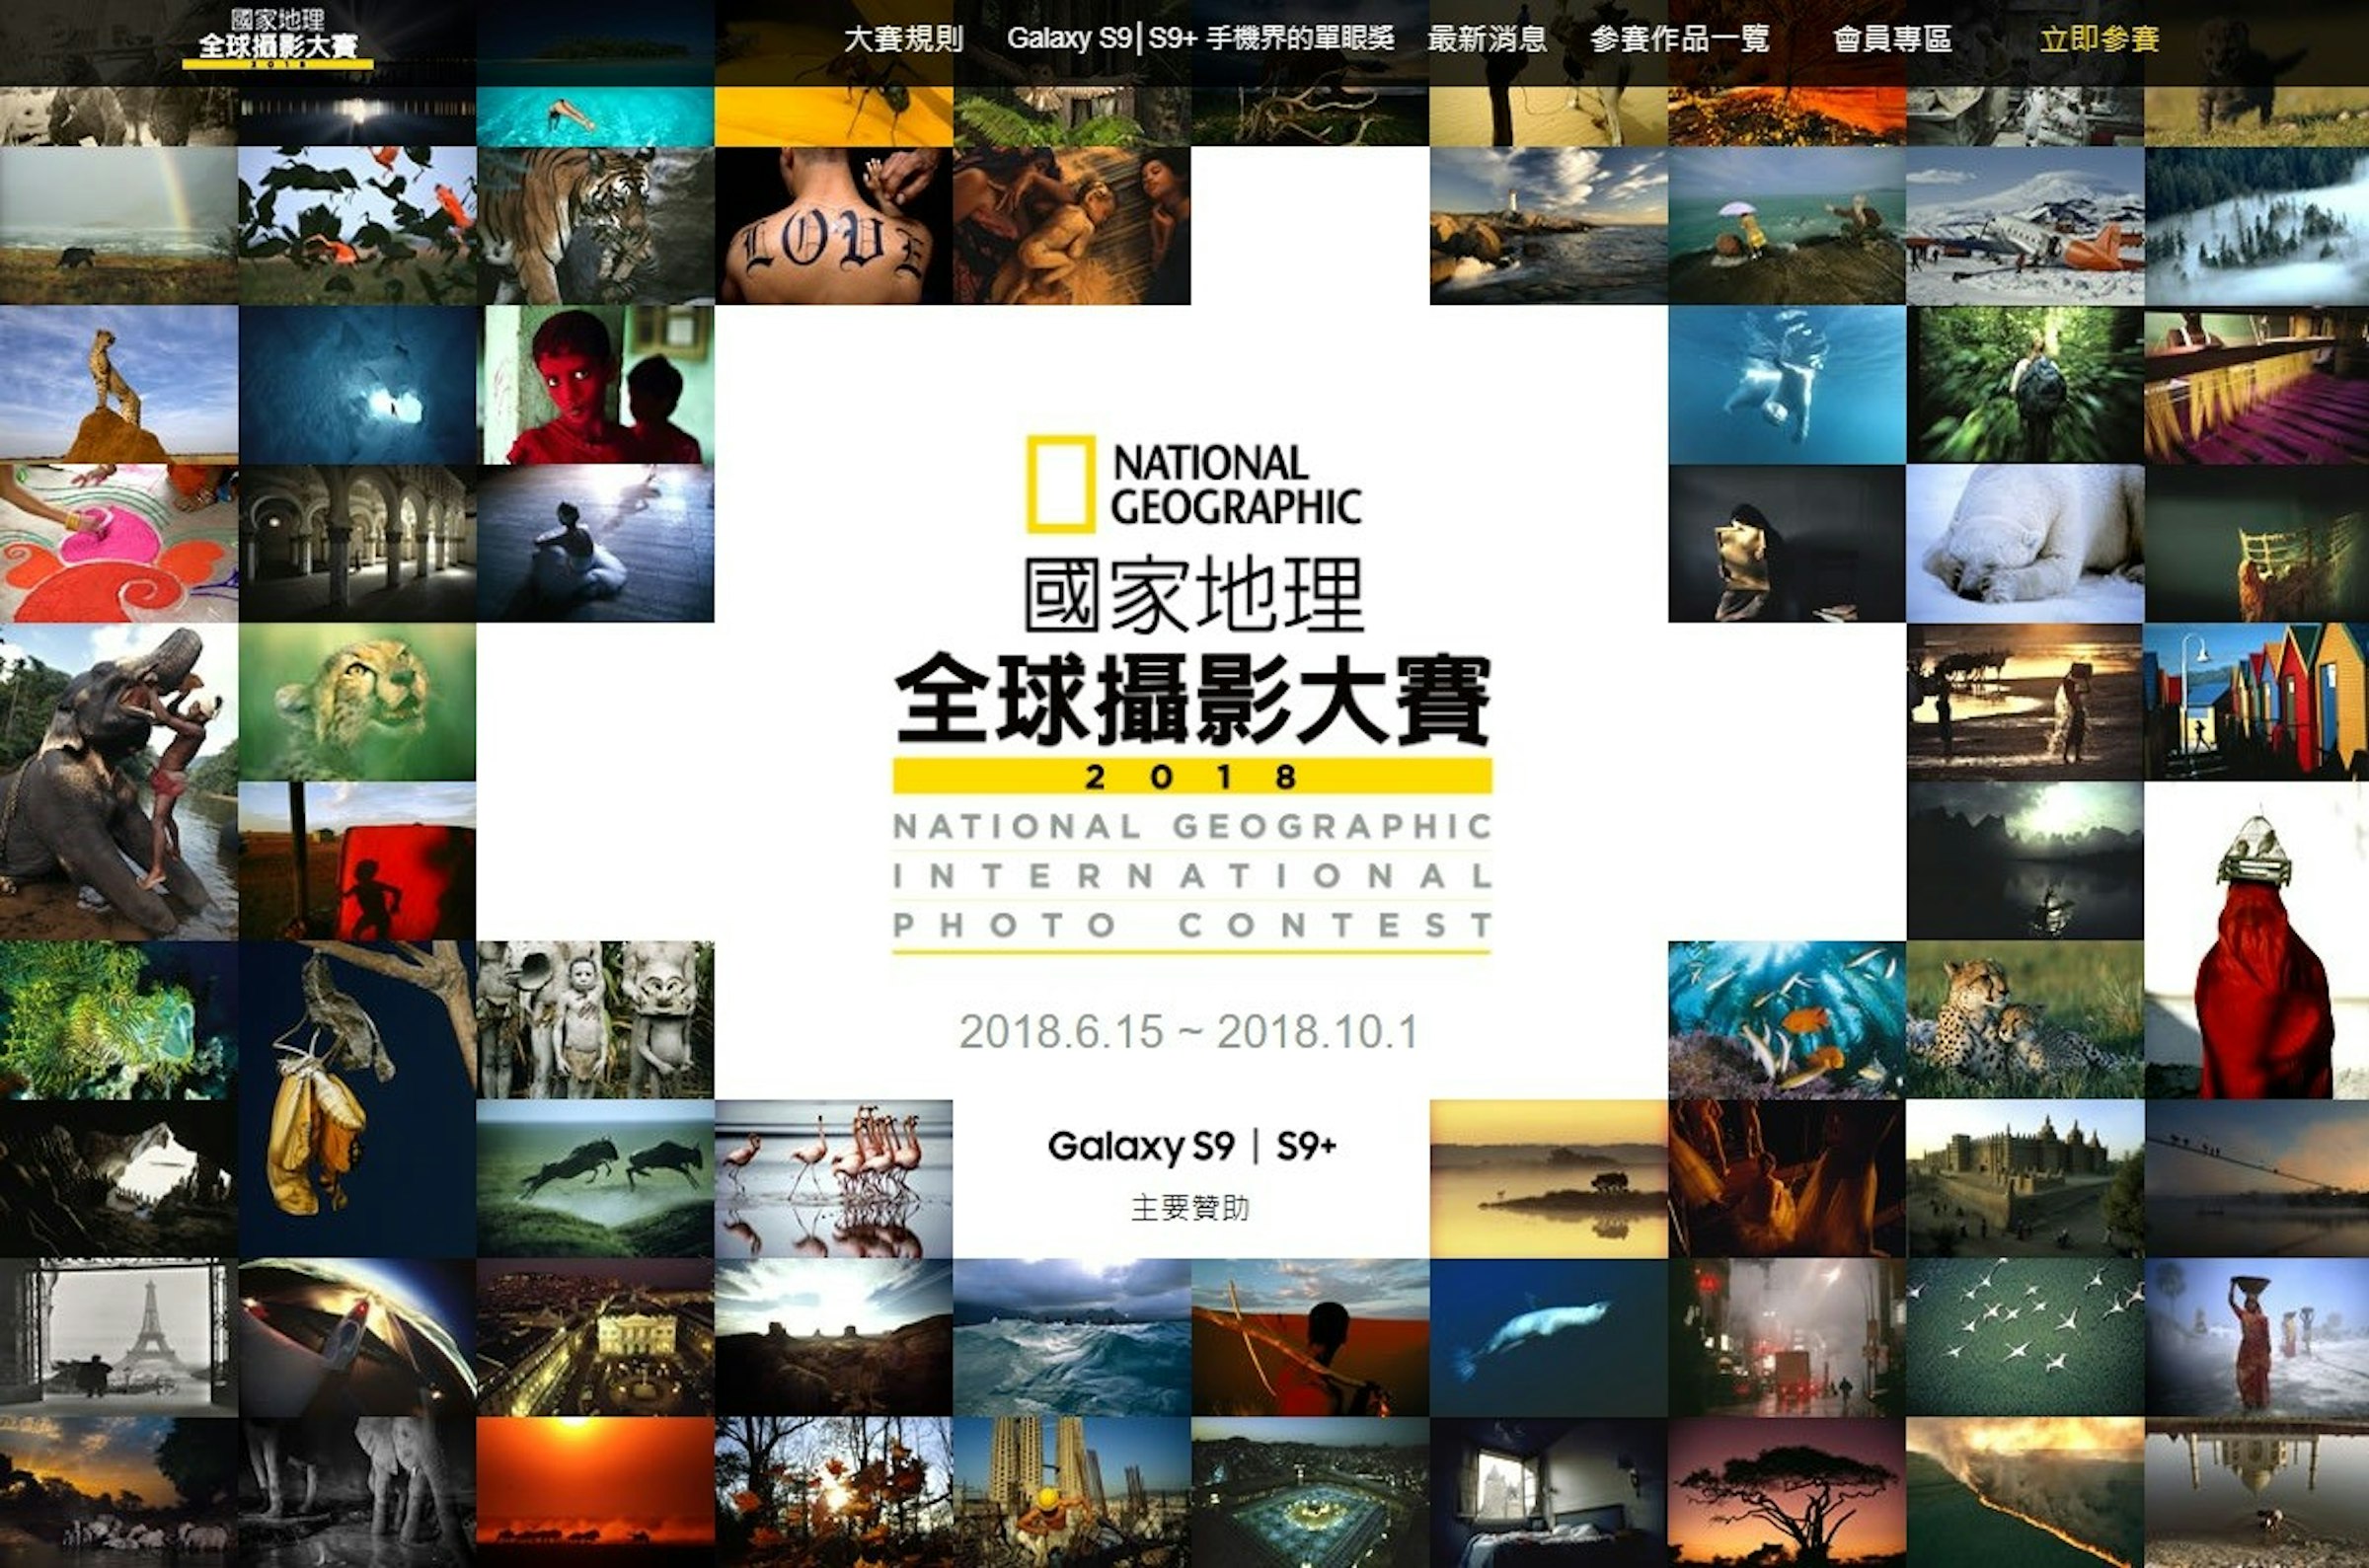 國家地理全球攝影大賽徵件中 網羅人物 地方 自然與圖片故事主題 增設青少年與手機組 Cool3c